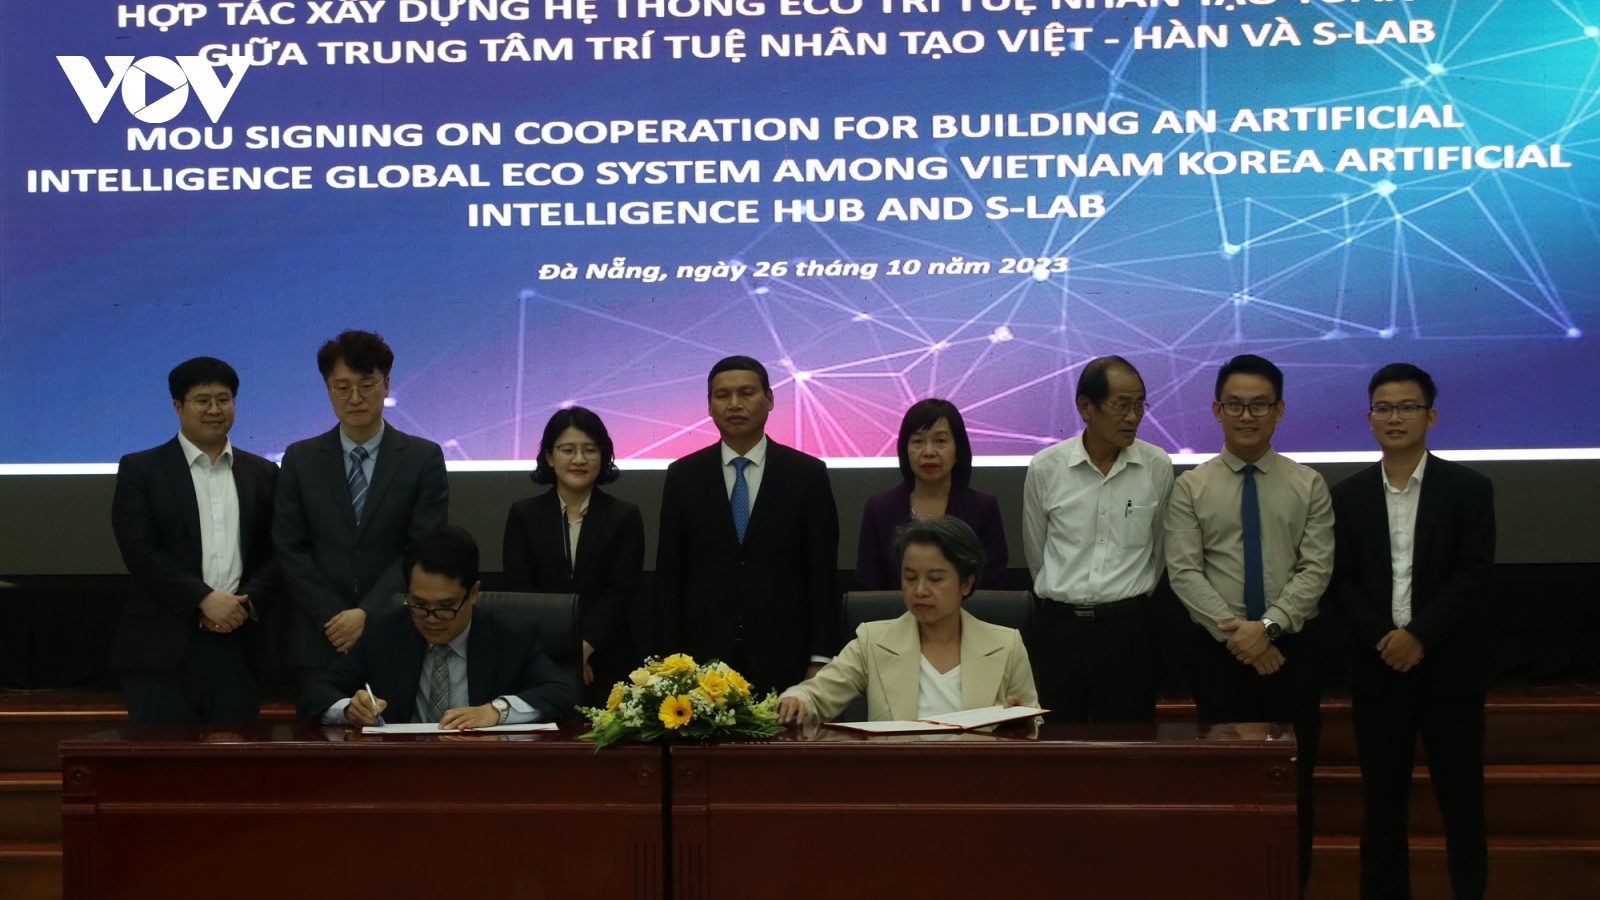 Xây dựng Trung tâm trí tuệ nhân tạo Việt - Hàn tại Đà Nẵng